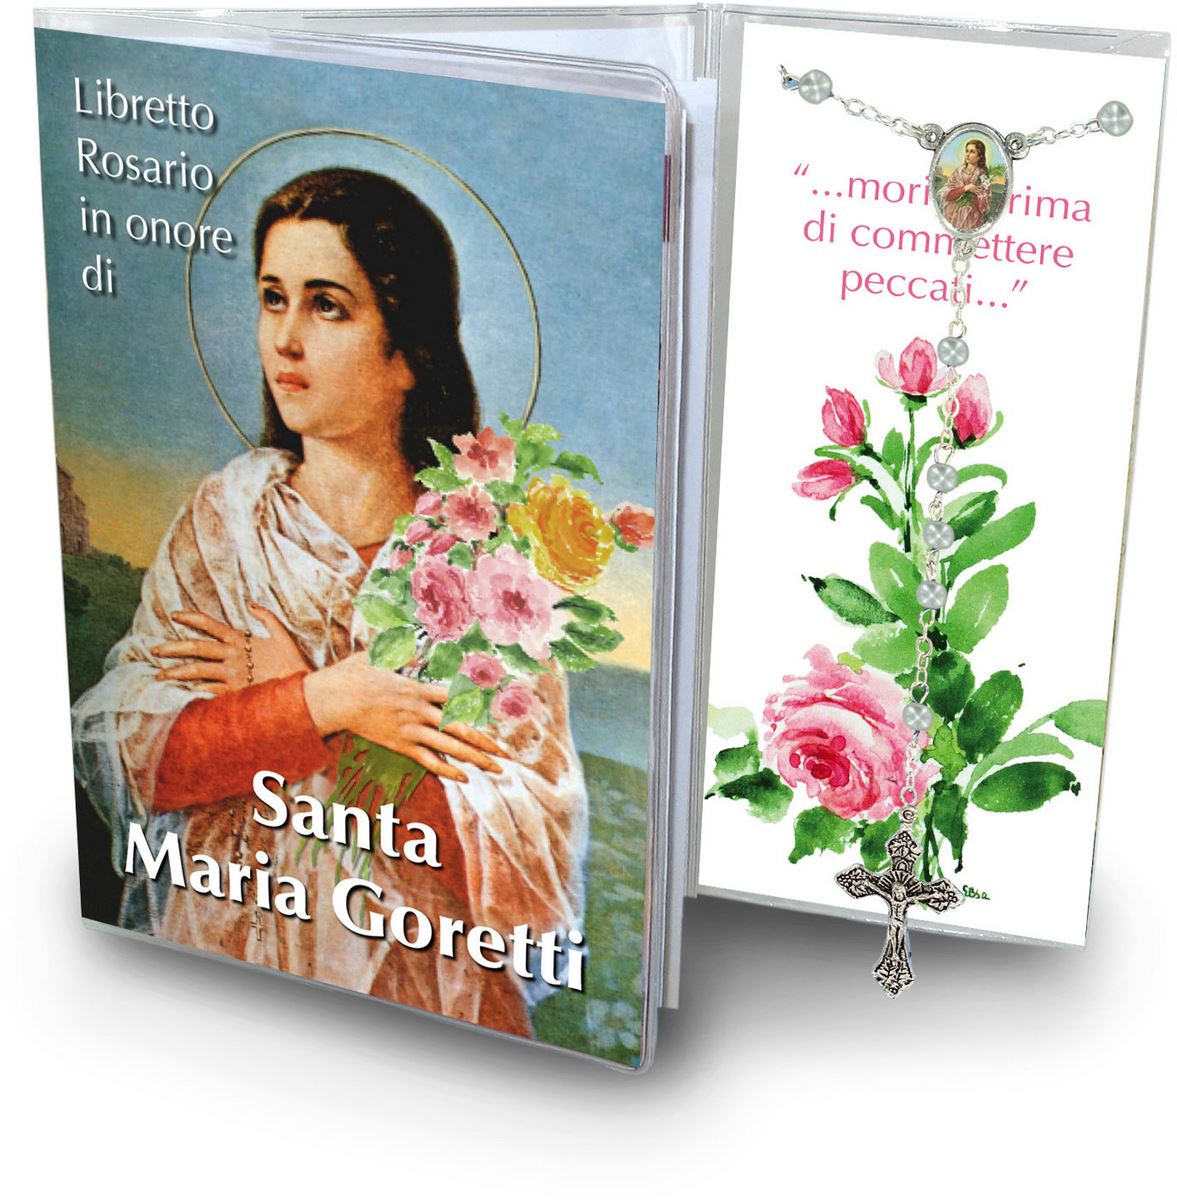 libretto con rosario dedicato a santa maria goretti, testi in italiano